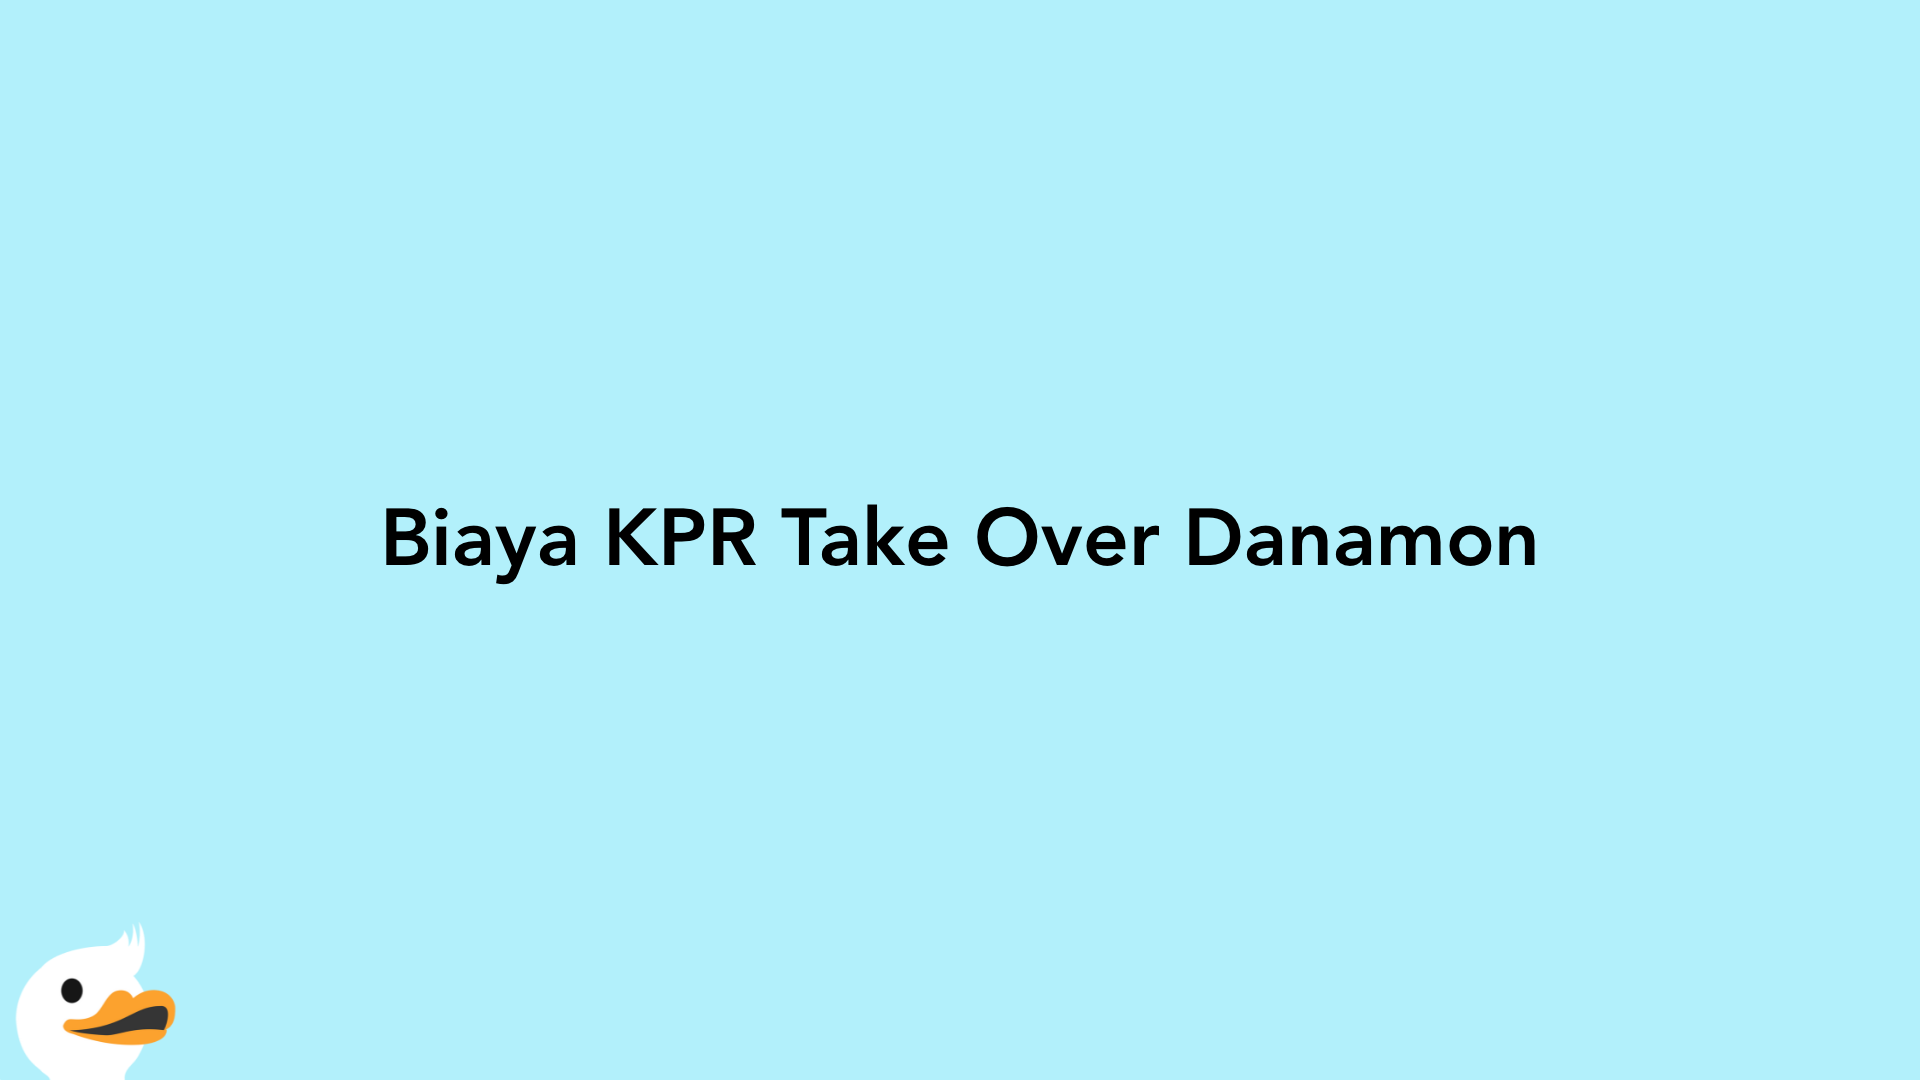 Biaya KPR Take Over Danamon